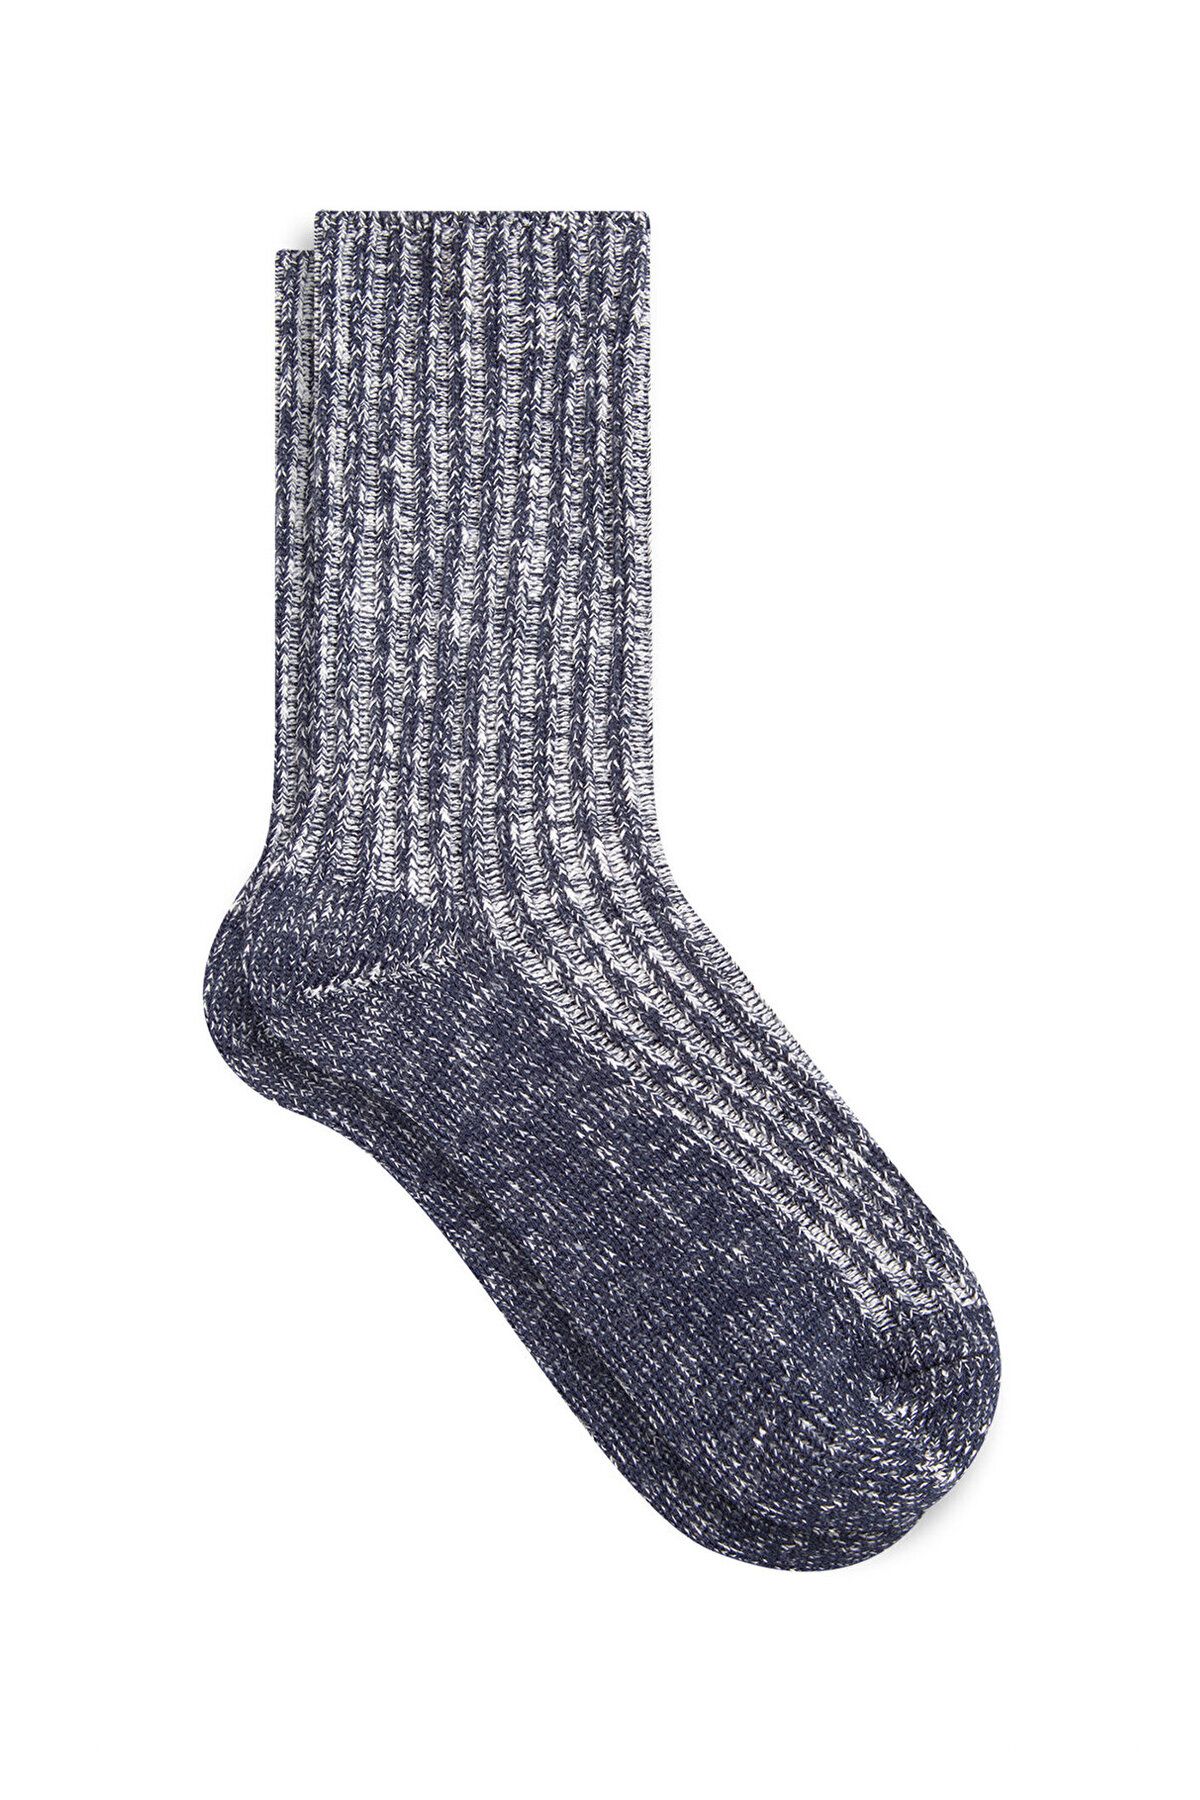 Mavi Lacivert Bot Çorabı 1912040-32184